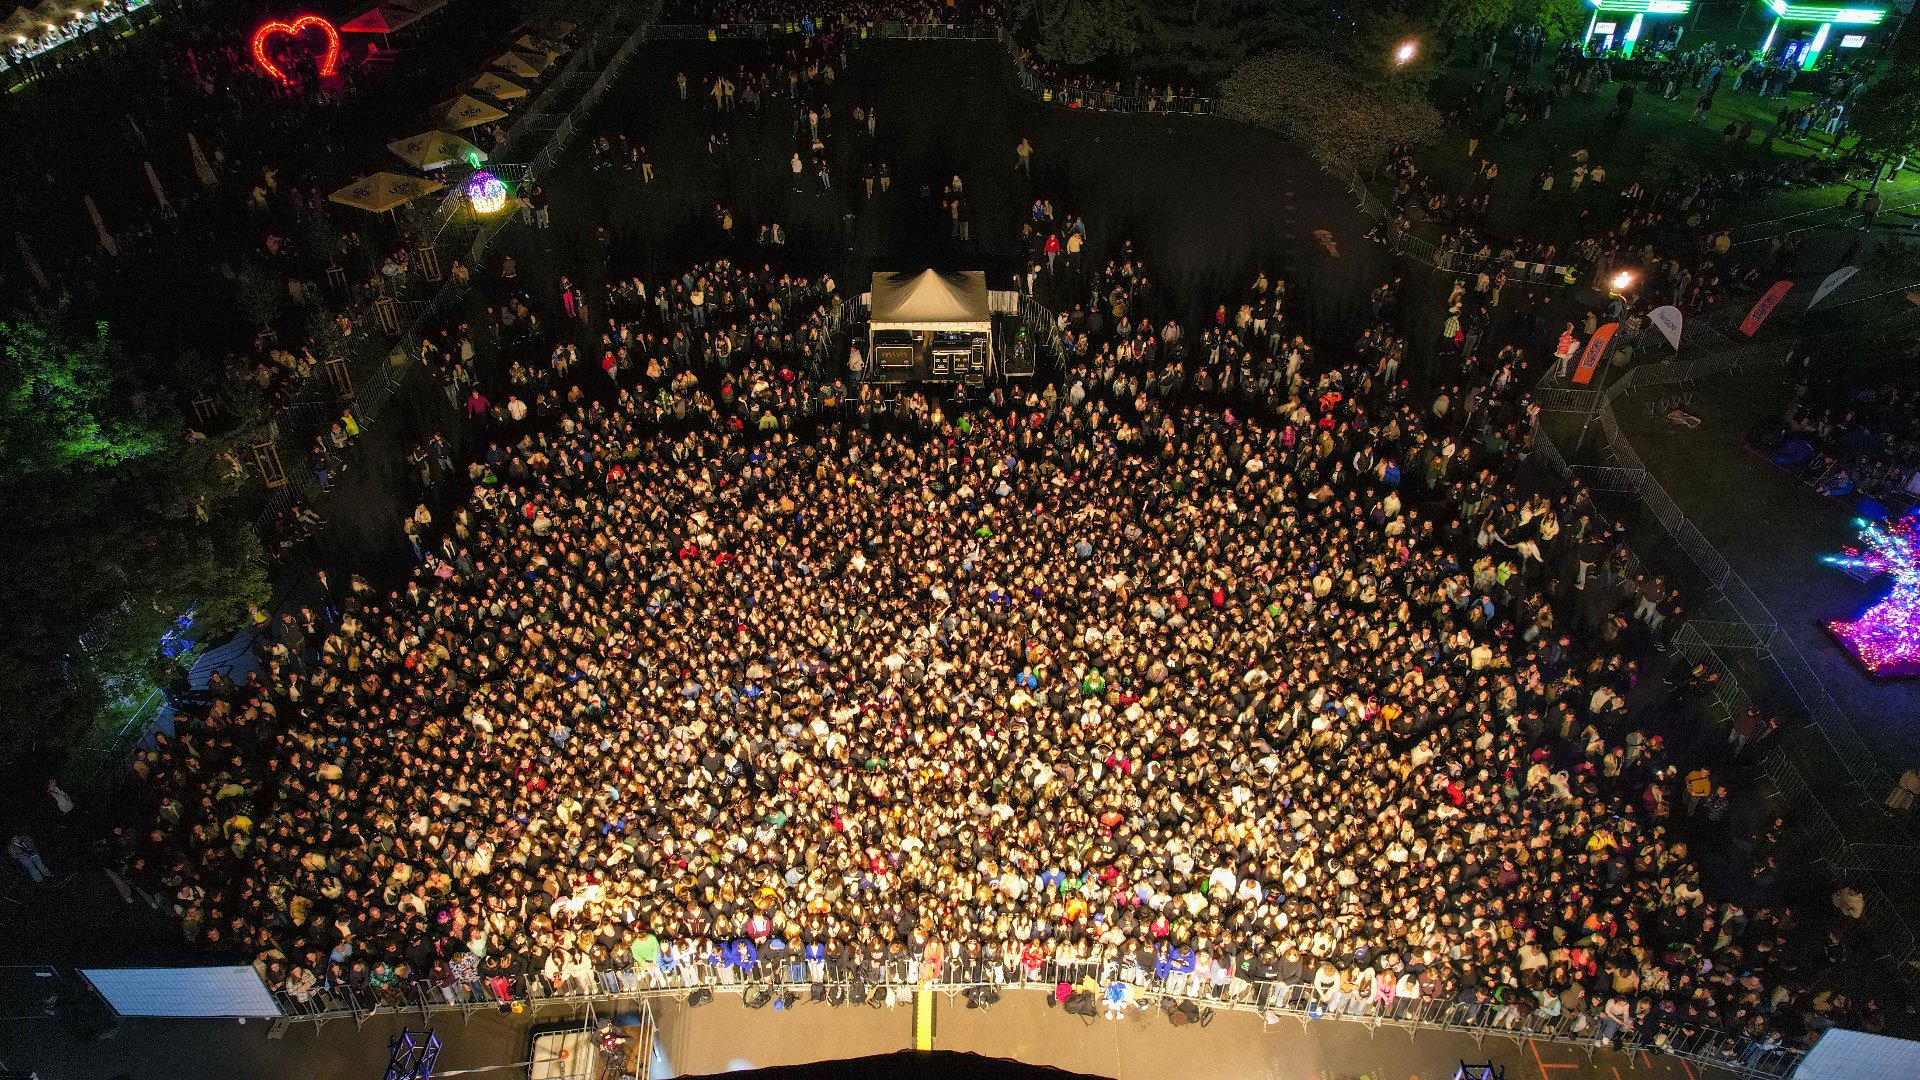 Zdjęcie z drona pokazujace tłum ludzi zgomadzonych przed sceną